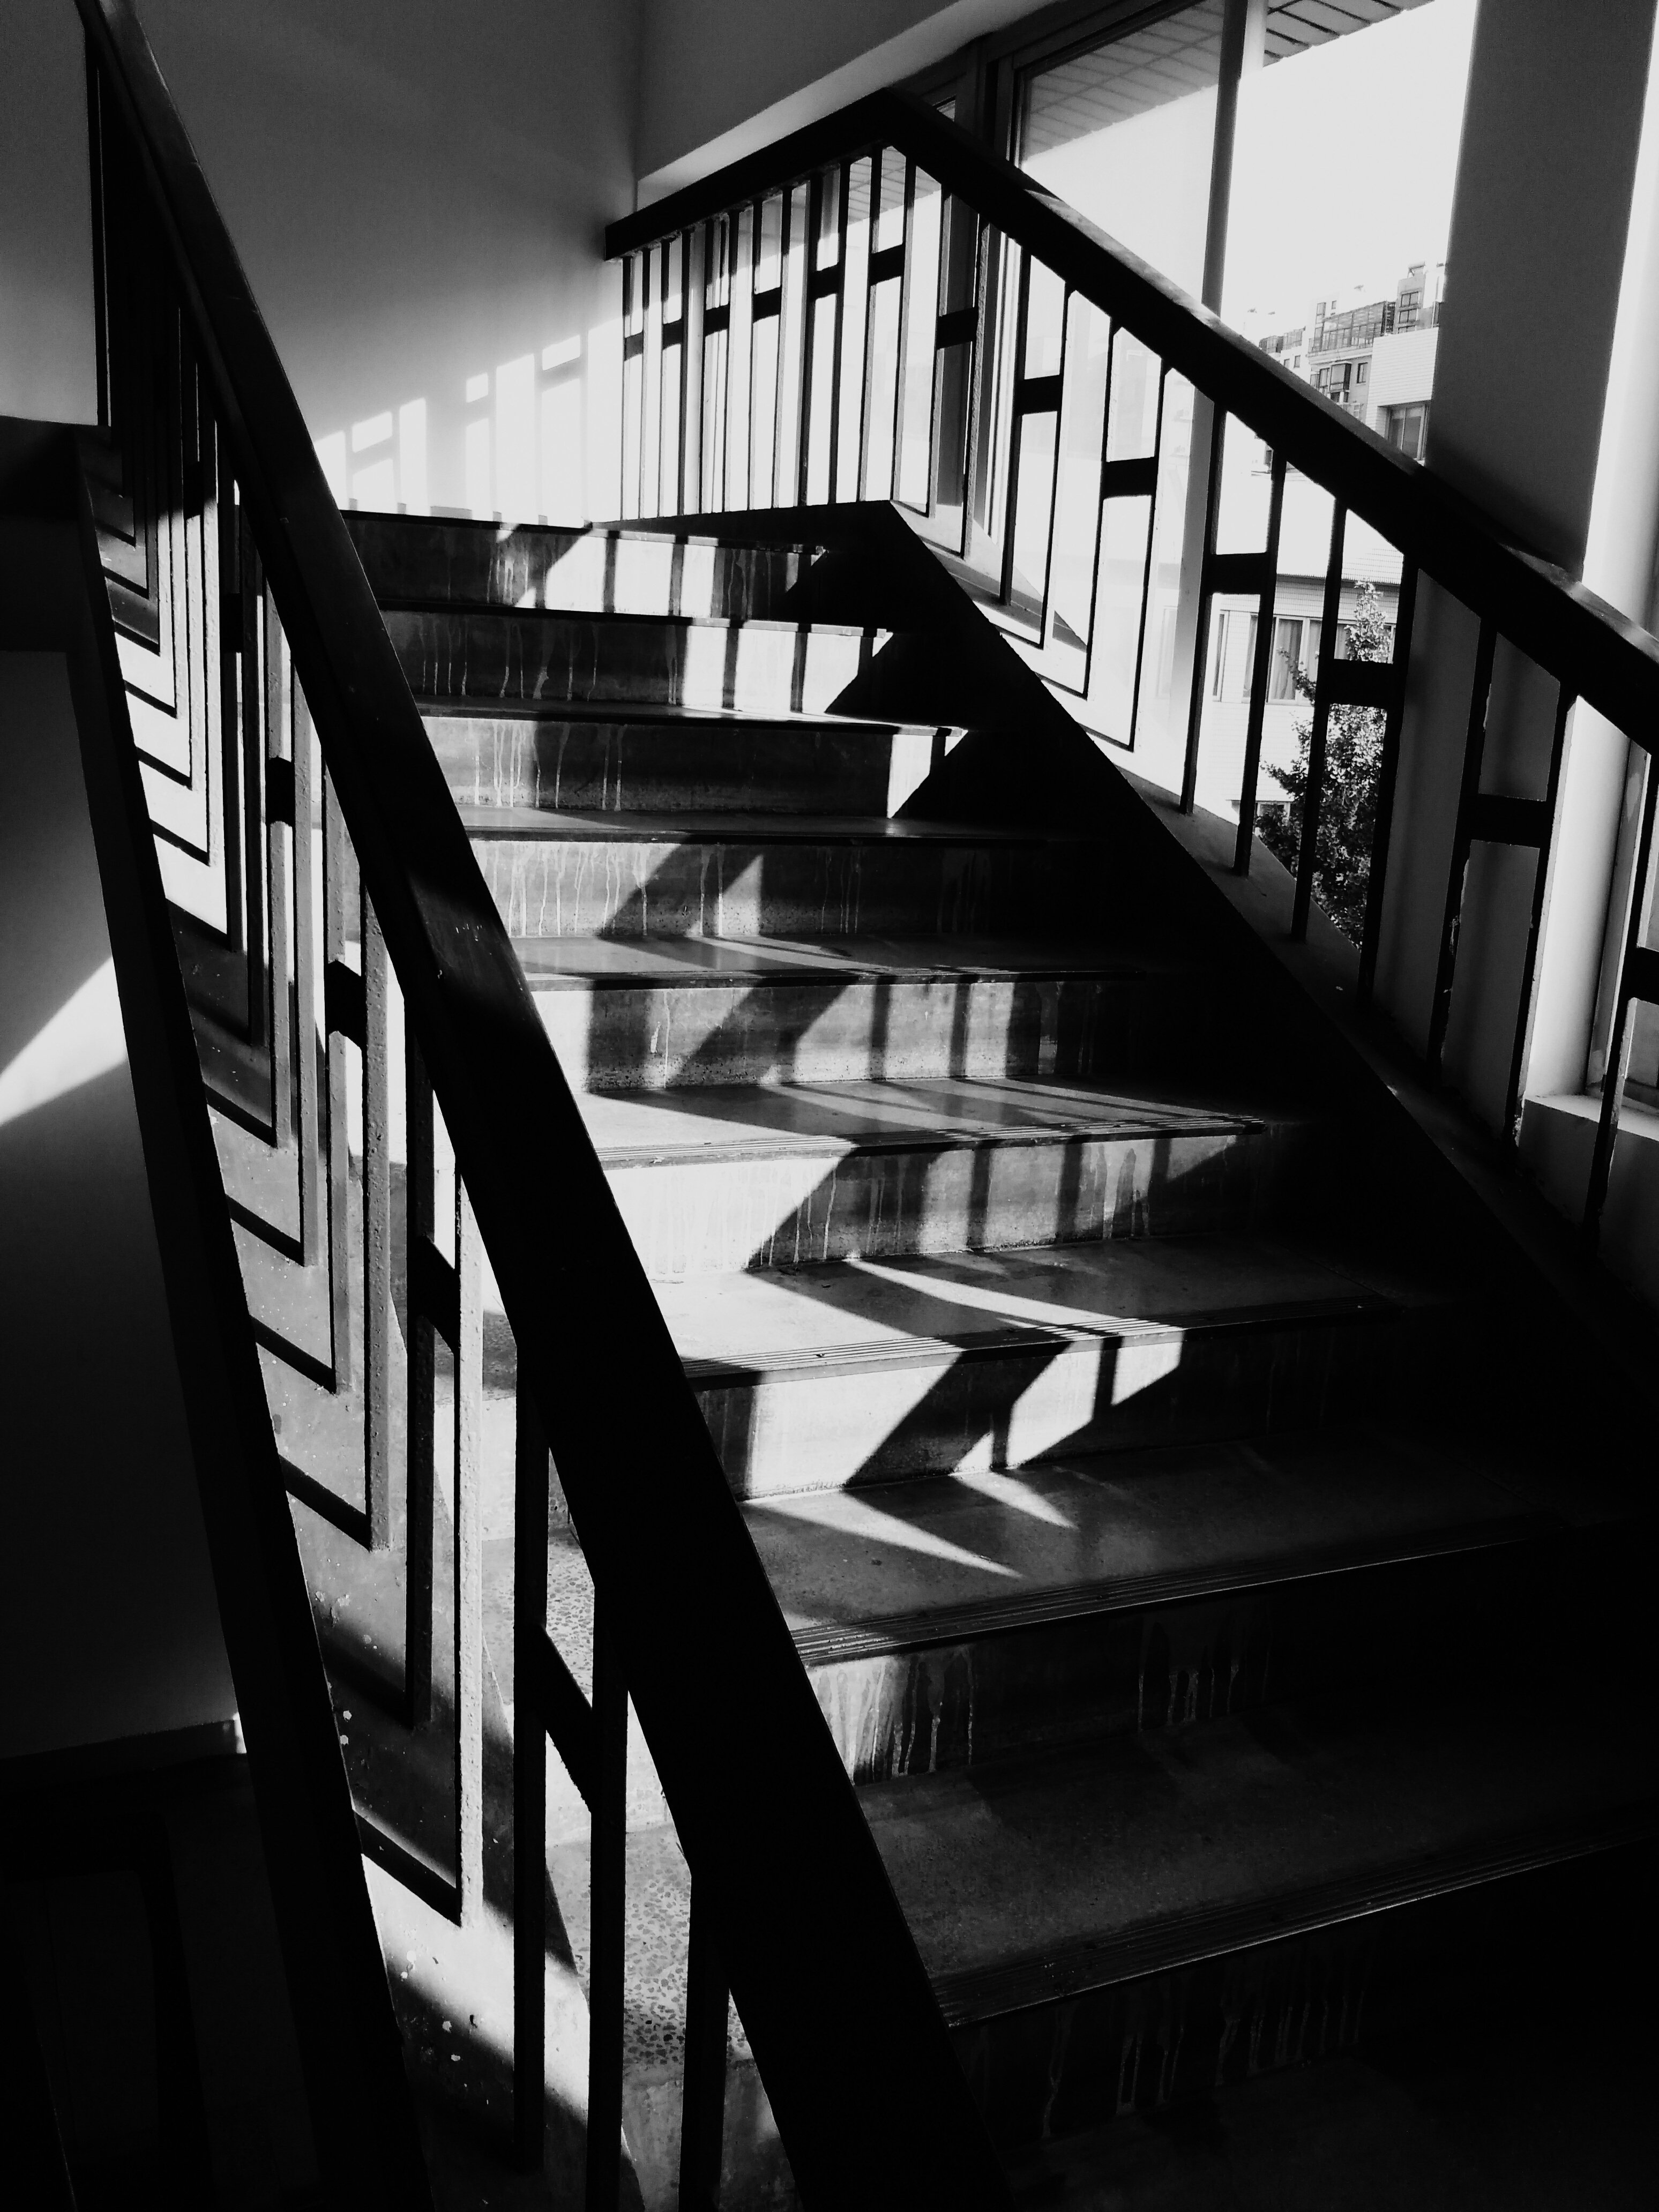 Референс лестница. Черно белая лестница. Темная лестница. Лестница бело черная. Лестница темно белая.